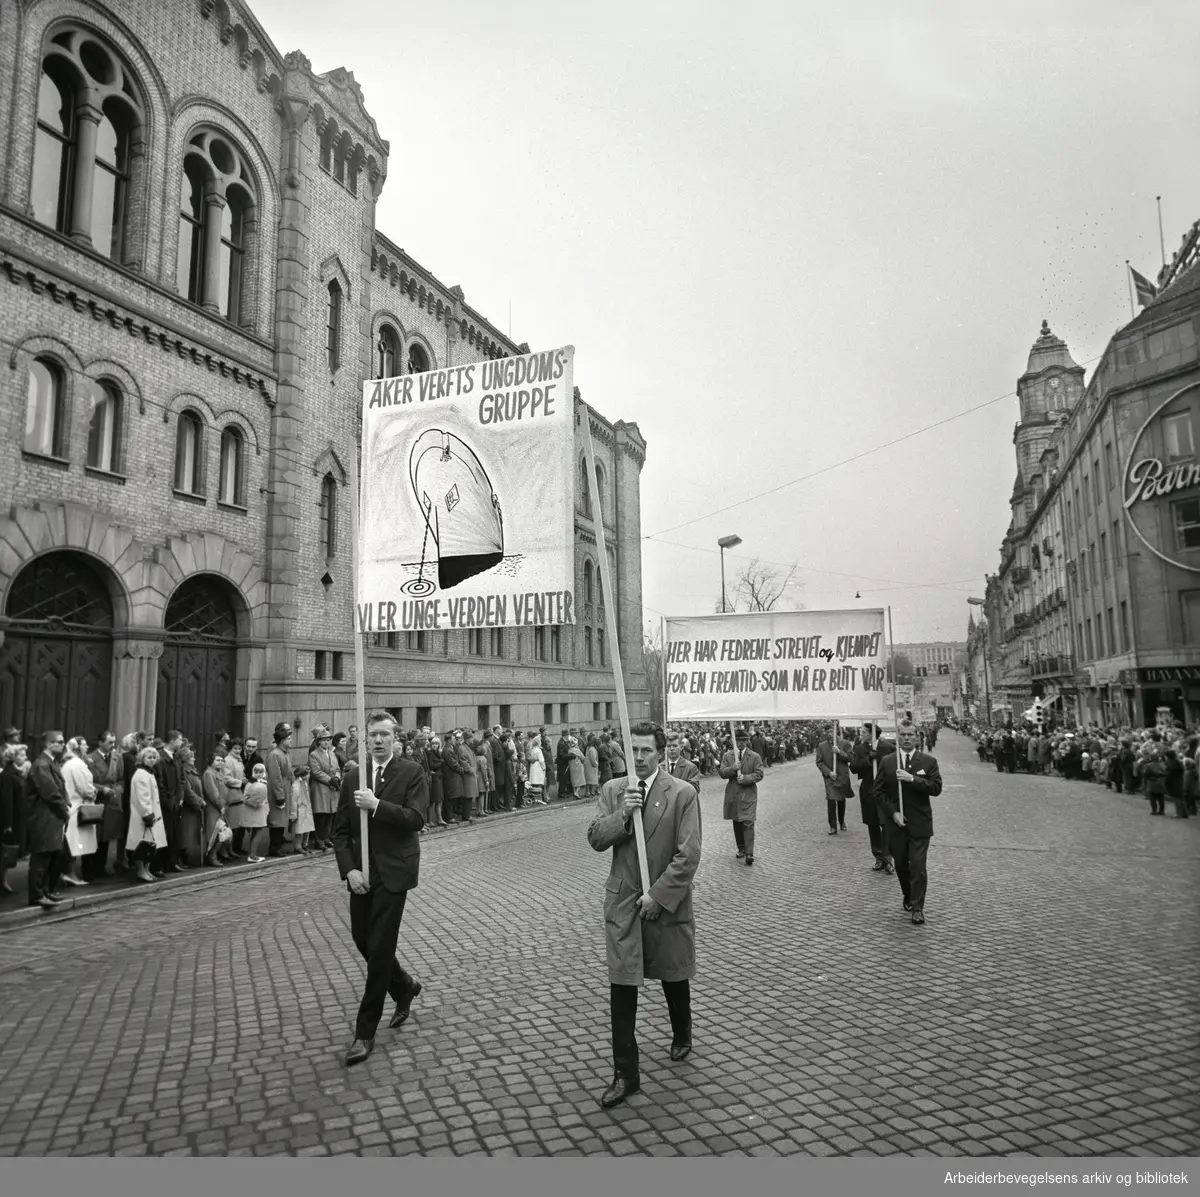 1. mai 1963 i Oslo.Demonstrasjonstoget i Karl Johans gate..Parole: Aker Verfts Ungdomsgruppe.Vi er unge - verden venter.Parole: Her har fedrene strevet og kjempet for en fremtid - som nå er blitt vår